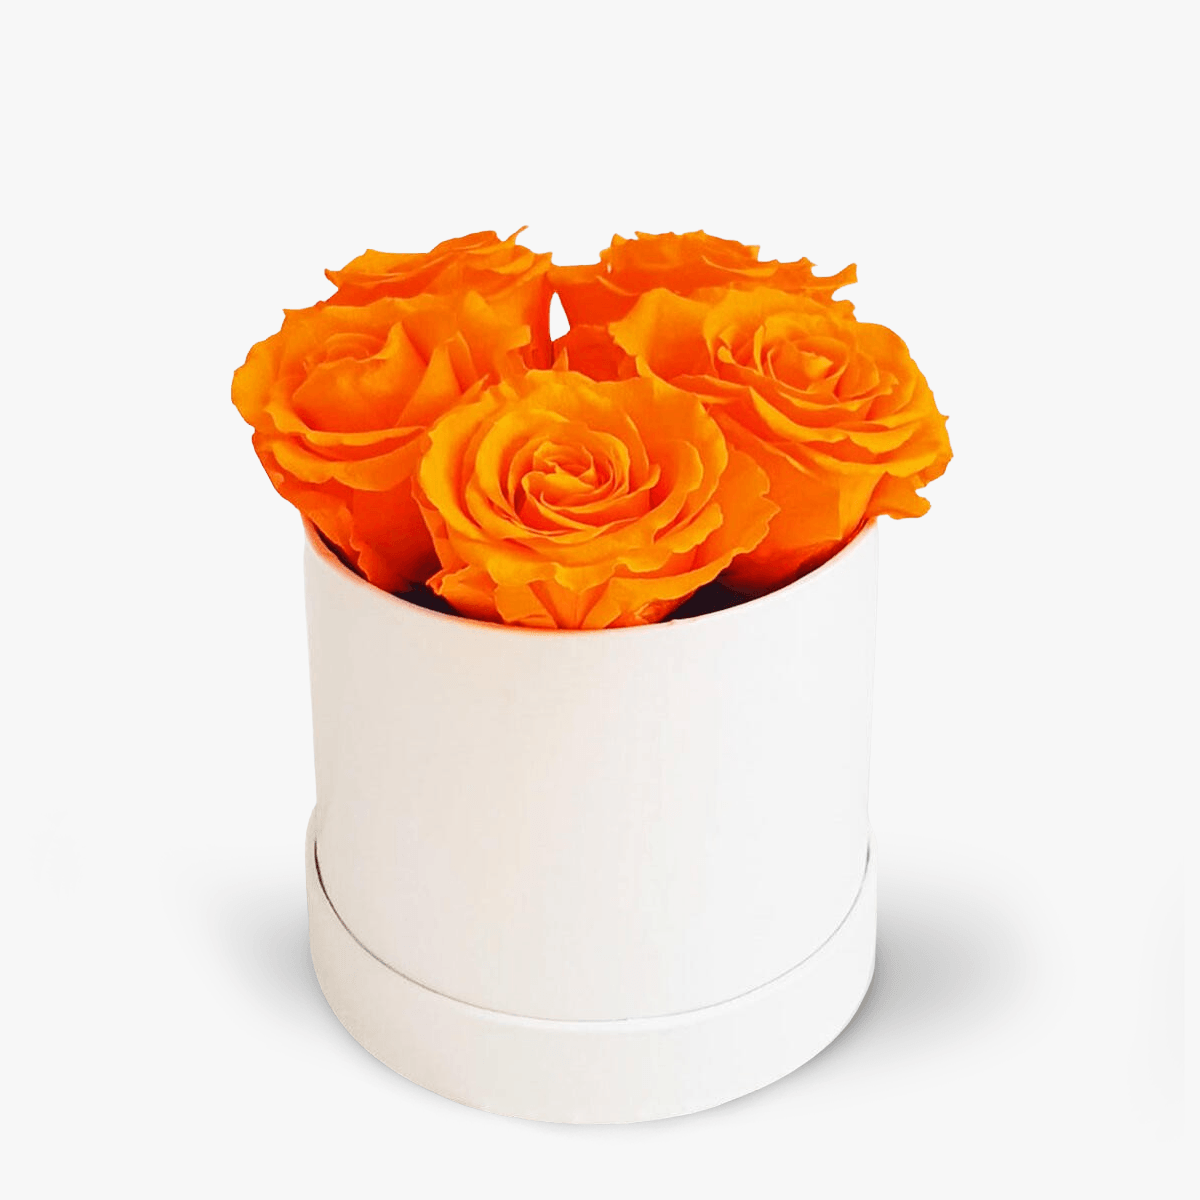 Cutie 5 trandafiri criogenati portocalii – Standard criogenati